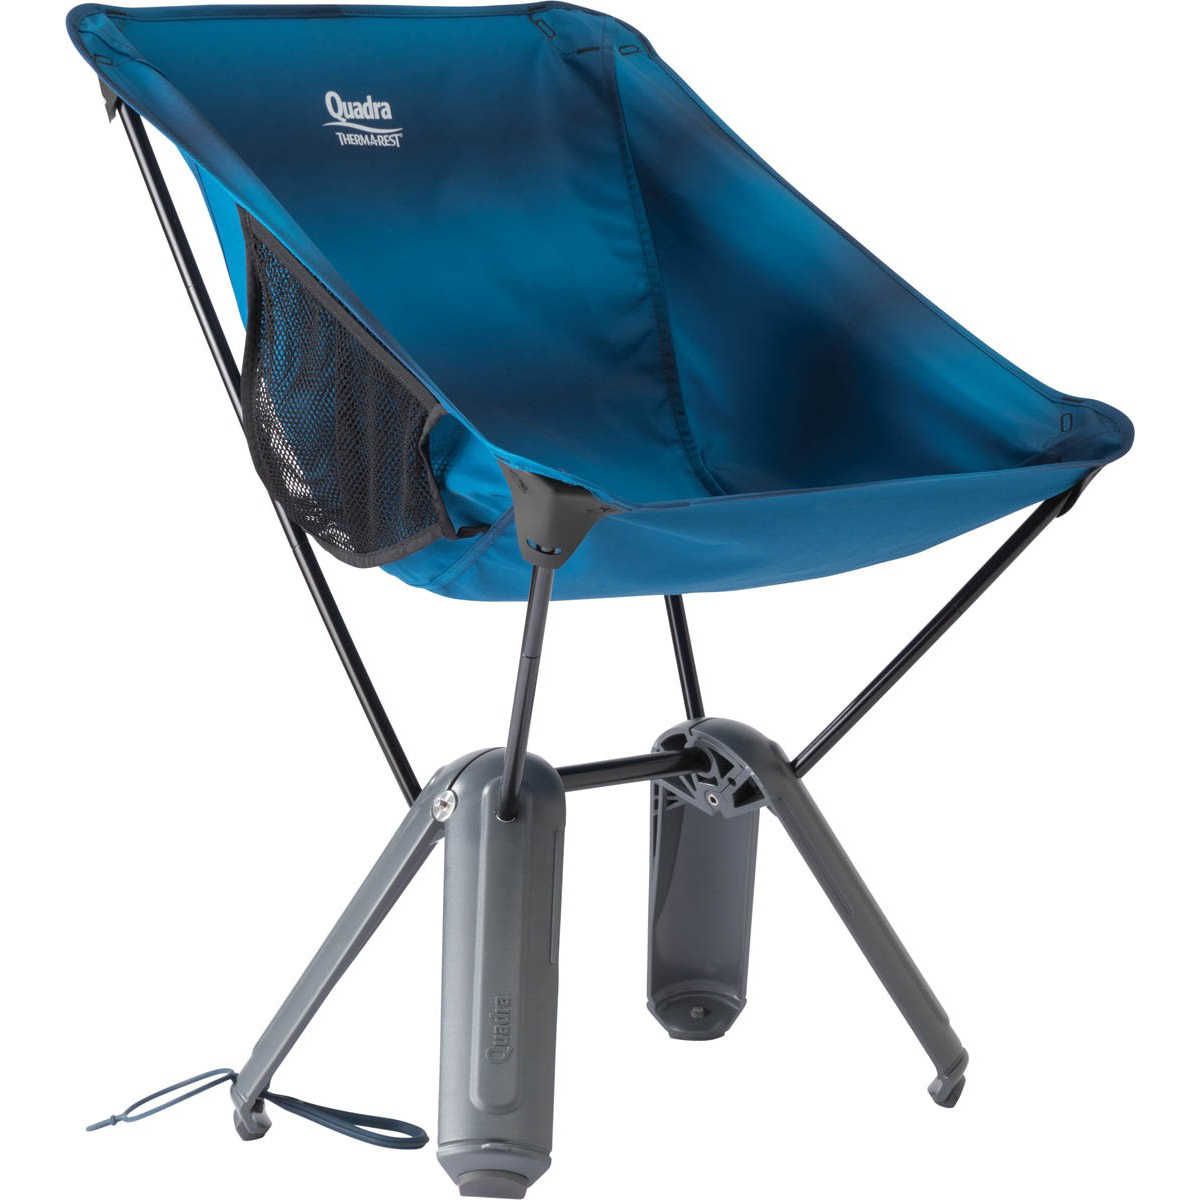 Chaise Quadra Chair - Blue Ocean